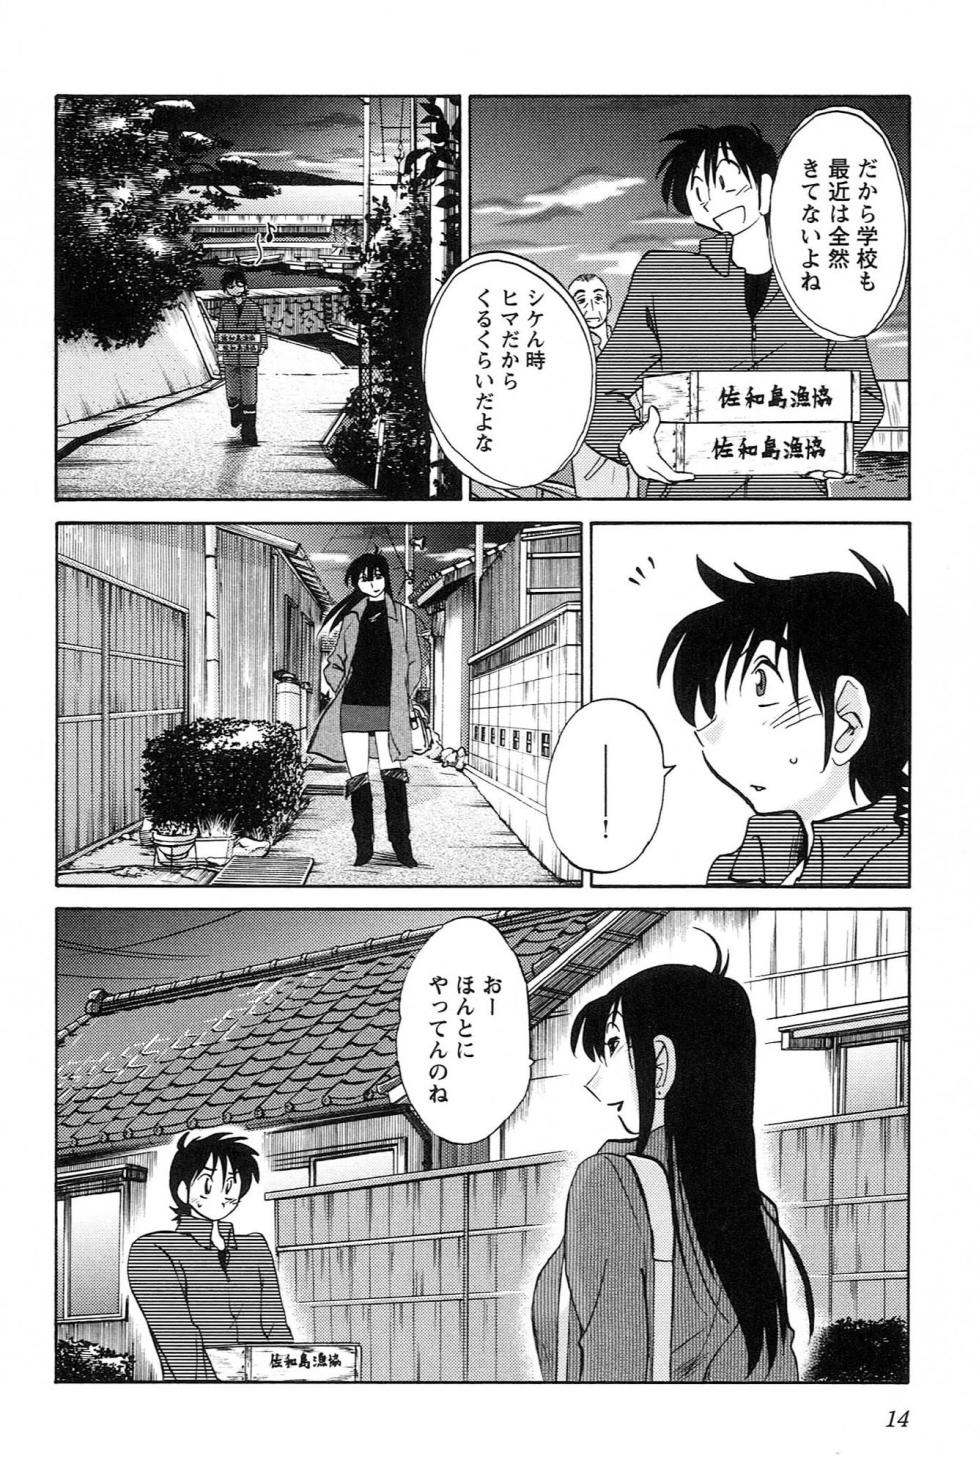 Mikazuki ga Waratteru vol 1 - Page 16